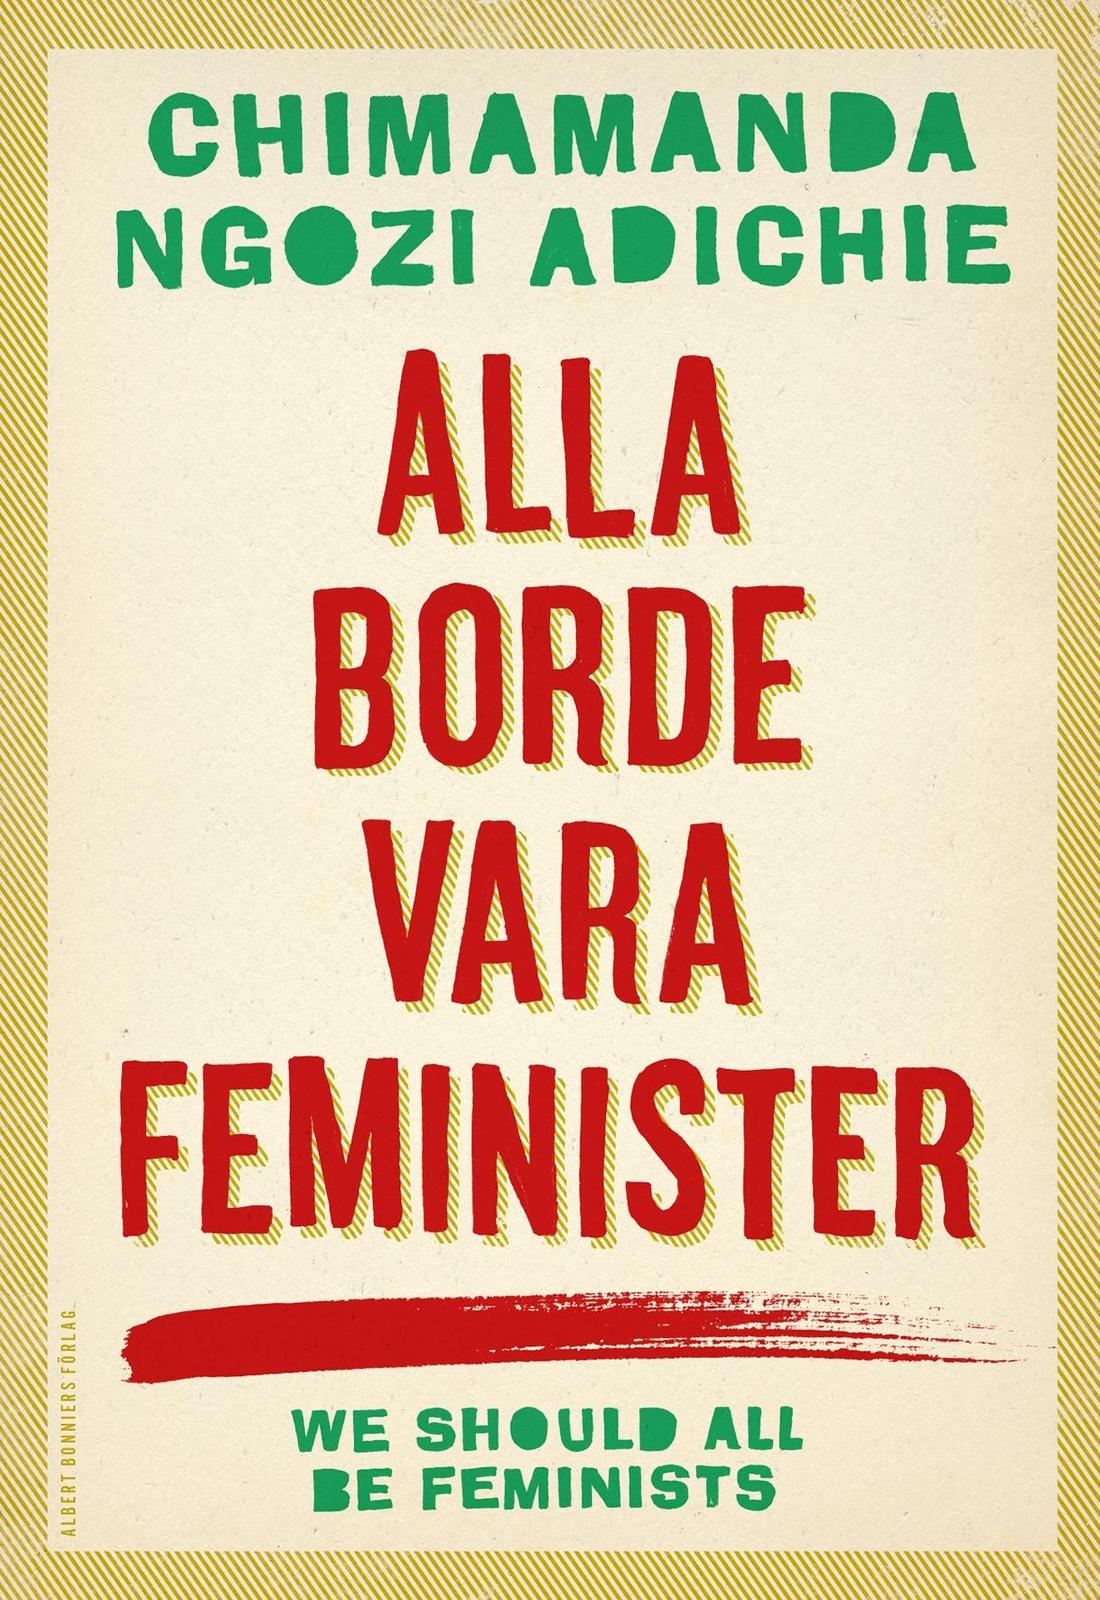 Chimamanda Ngozi Adichie: Alla borde vara feminister (Swedish language)